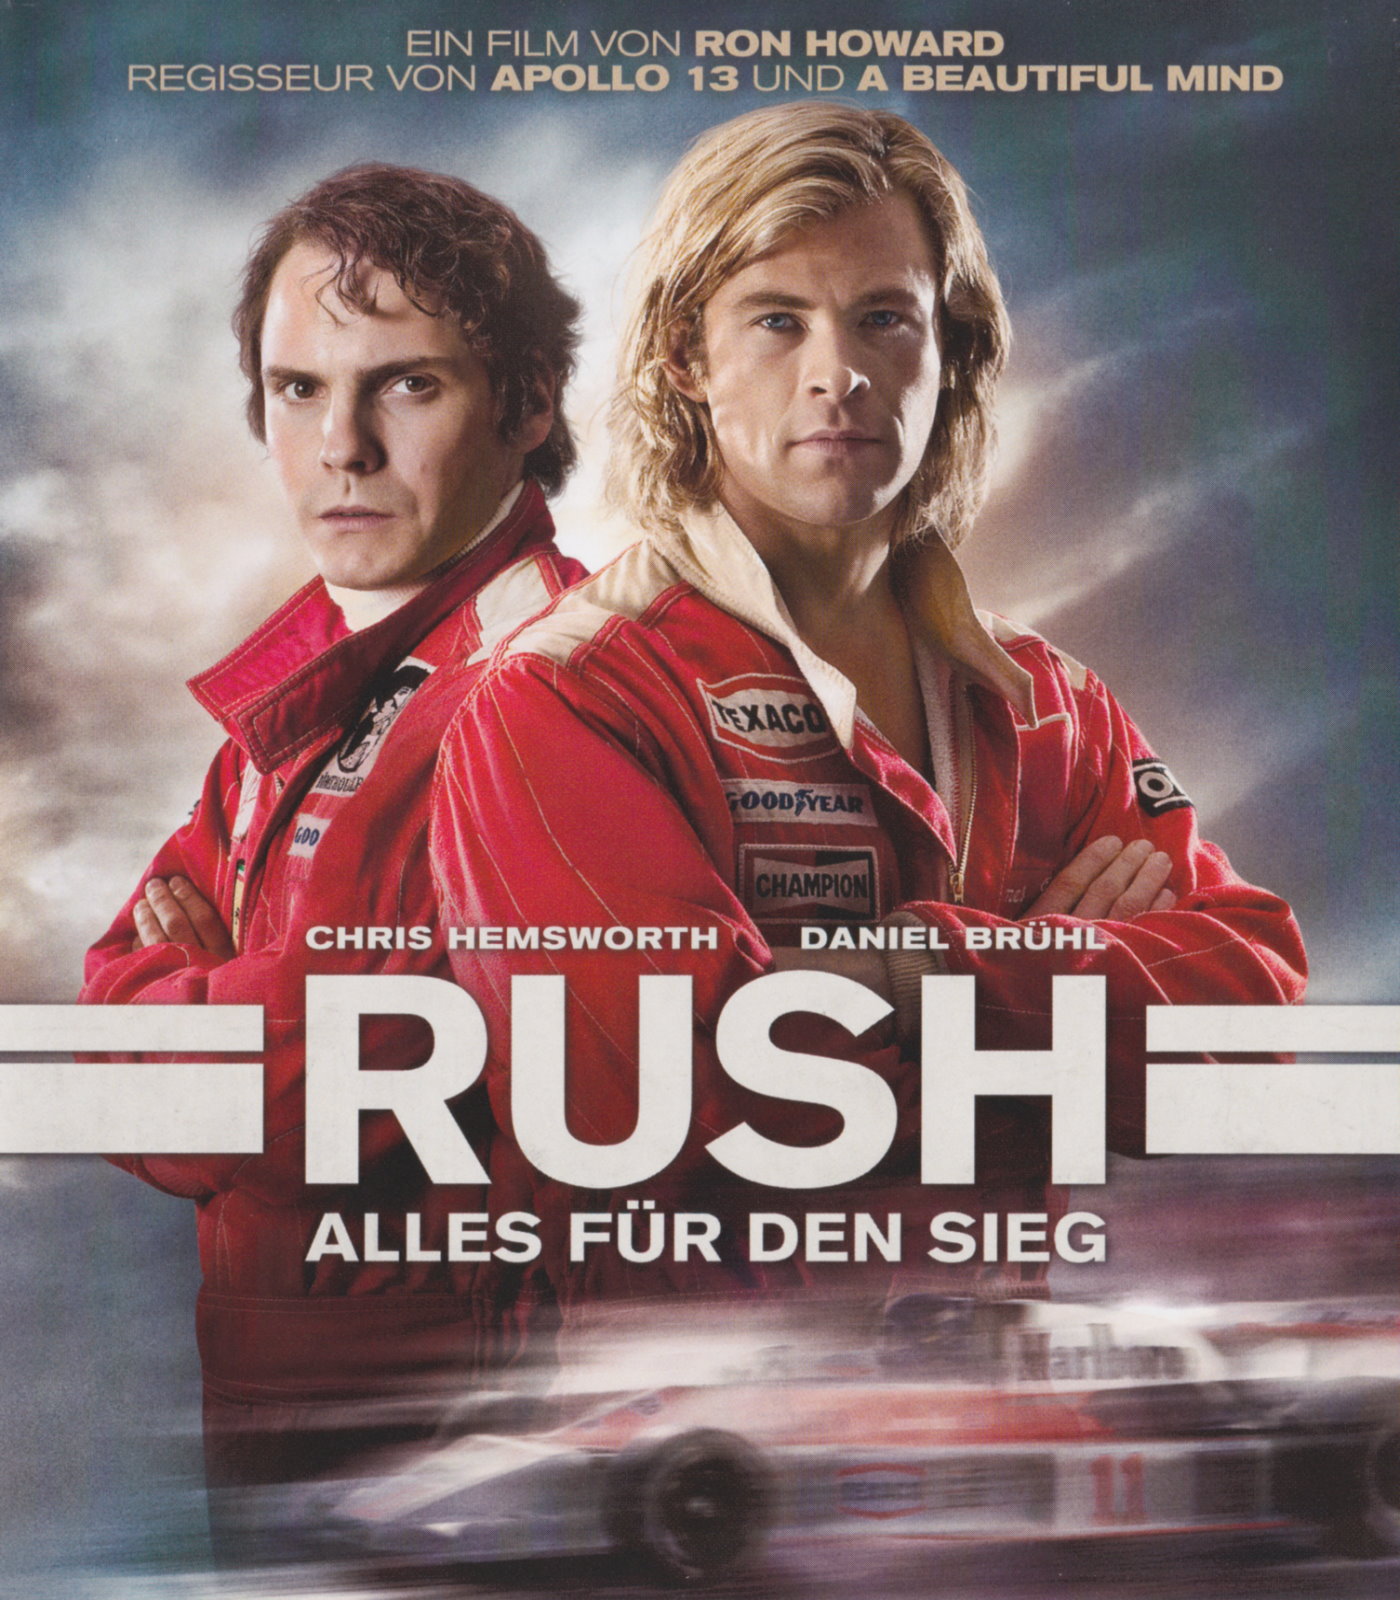 Cover - Rush - Alles für den Sieg.jpg